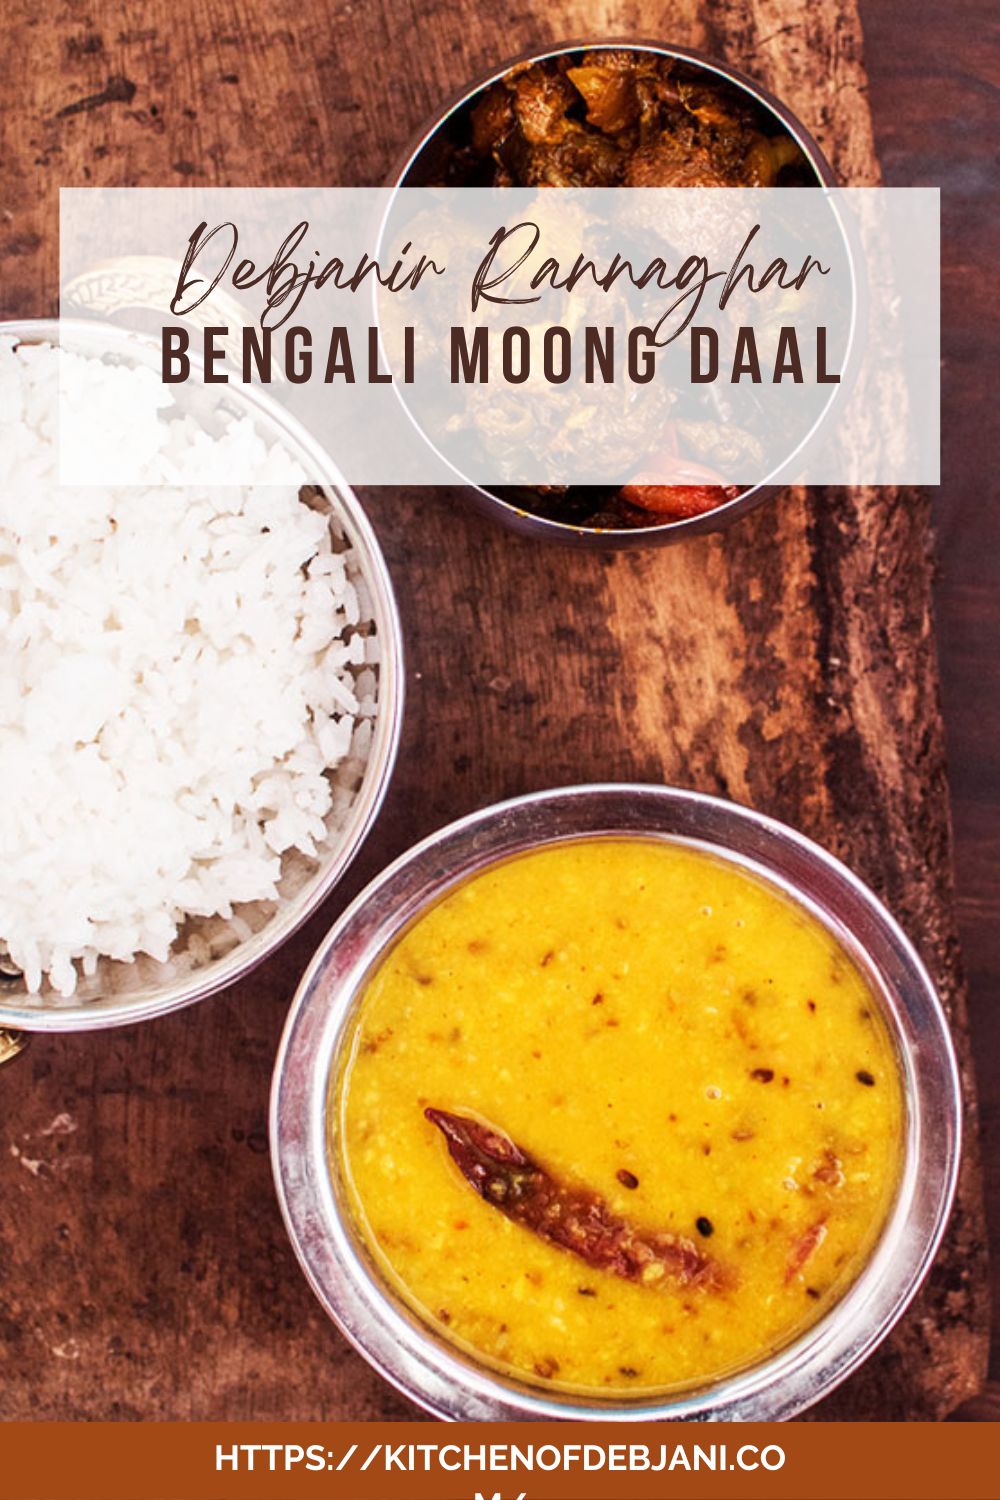 %Bengali Bhaja Moonger Daal Recipe debjanir rannaghar pinterest